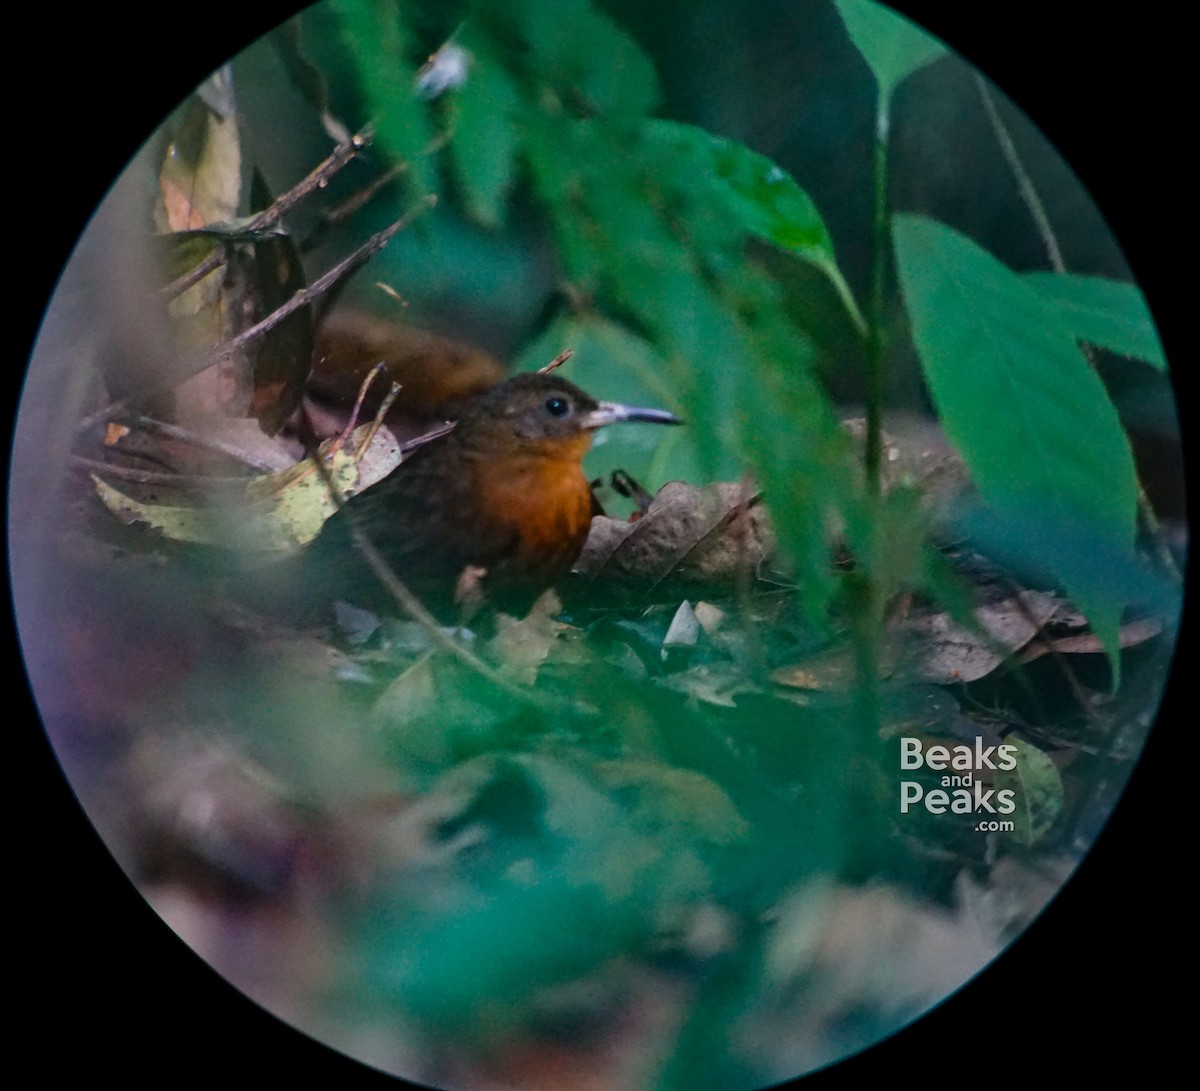 Middle American Leaftosser - William Orellana (Beaks and Peaks)